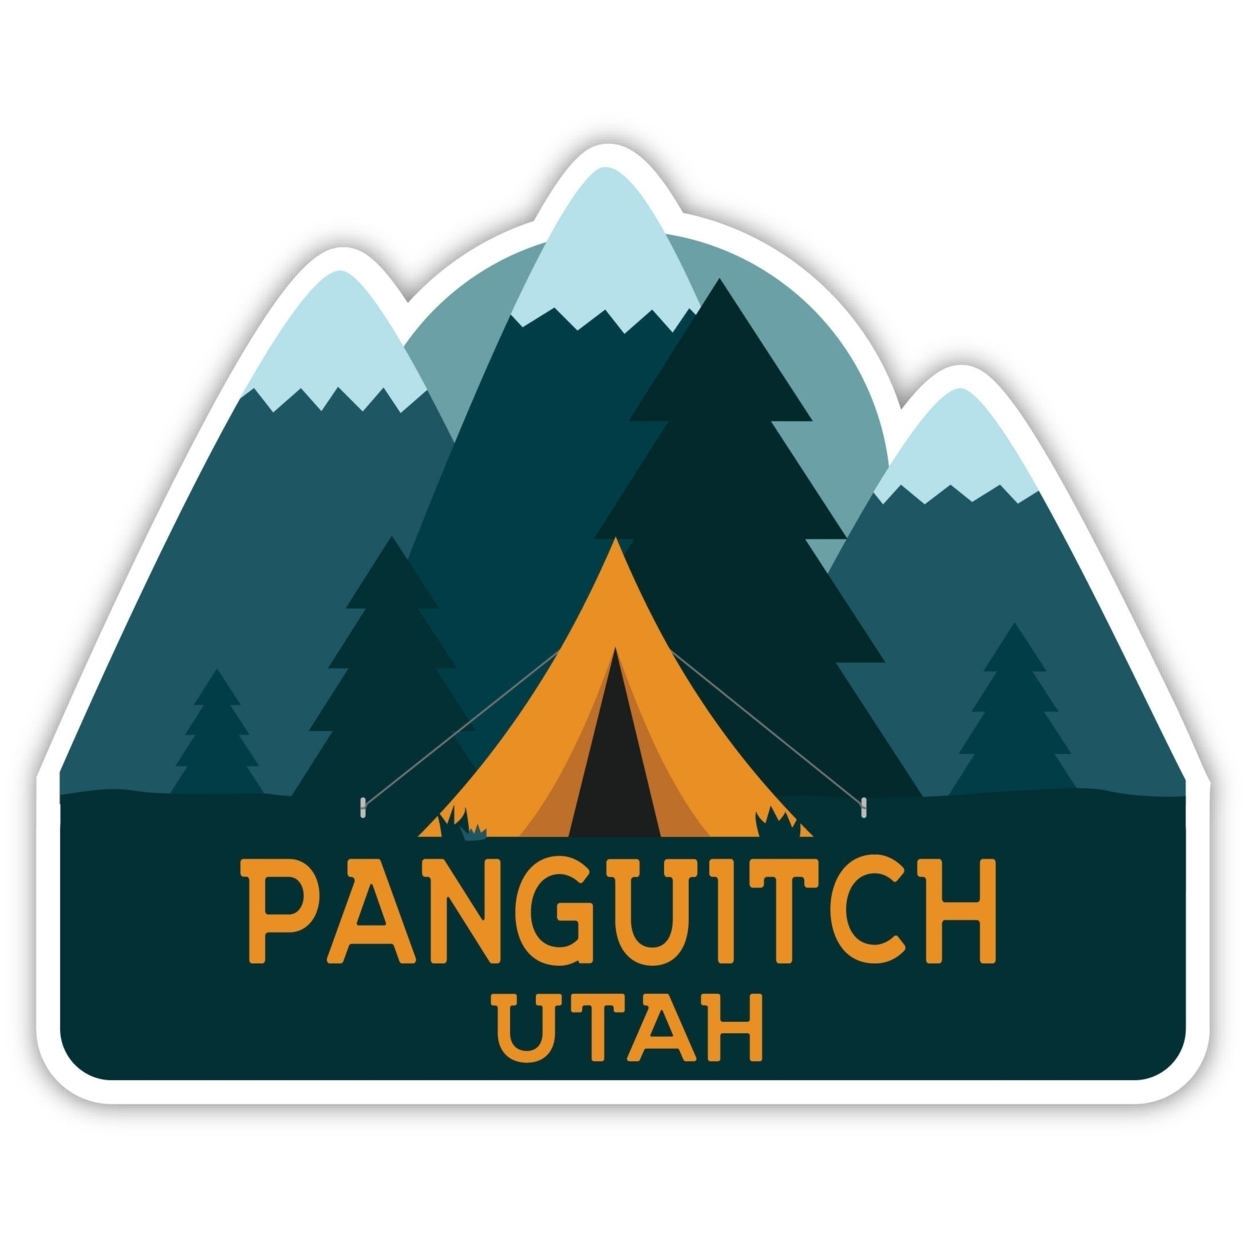 Panguitch Utah Souvenir Decorative Stickers (Choose Theme And Size) - Single Unit, 4-Inch, Adventures Awaits